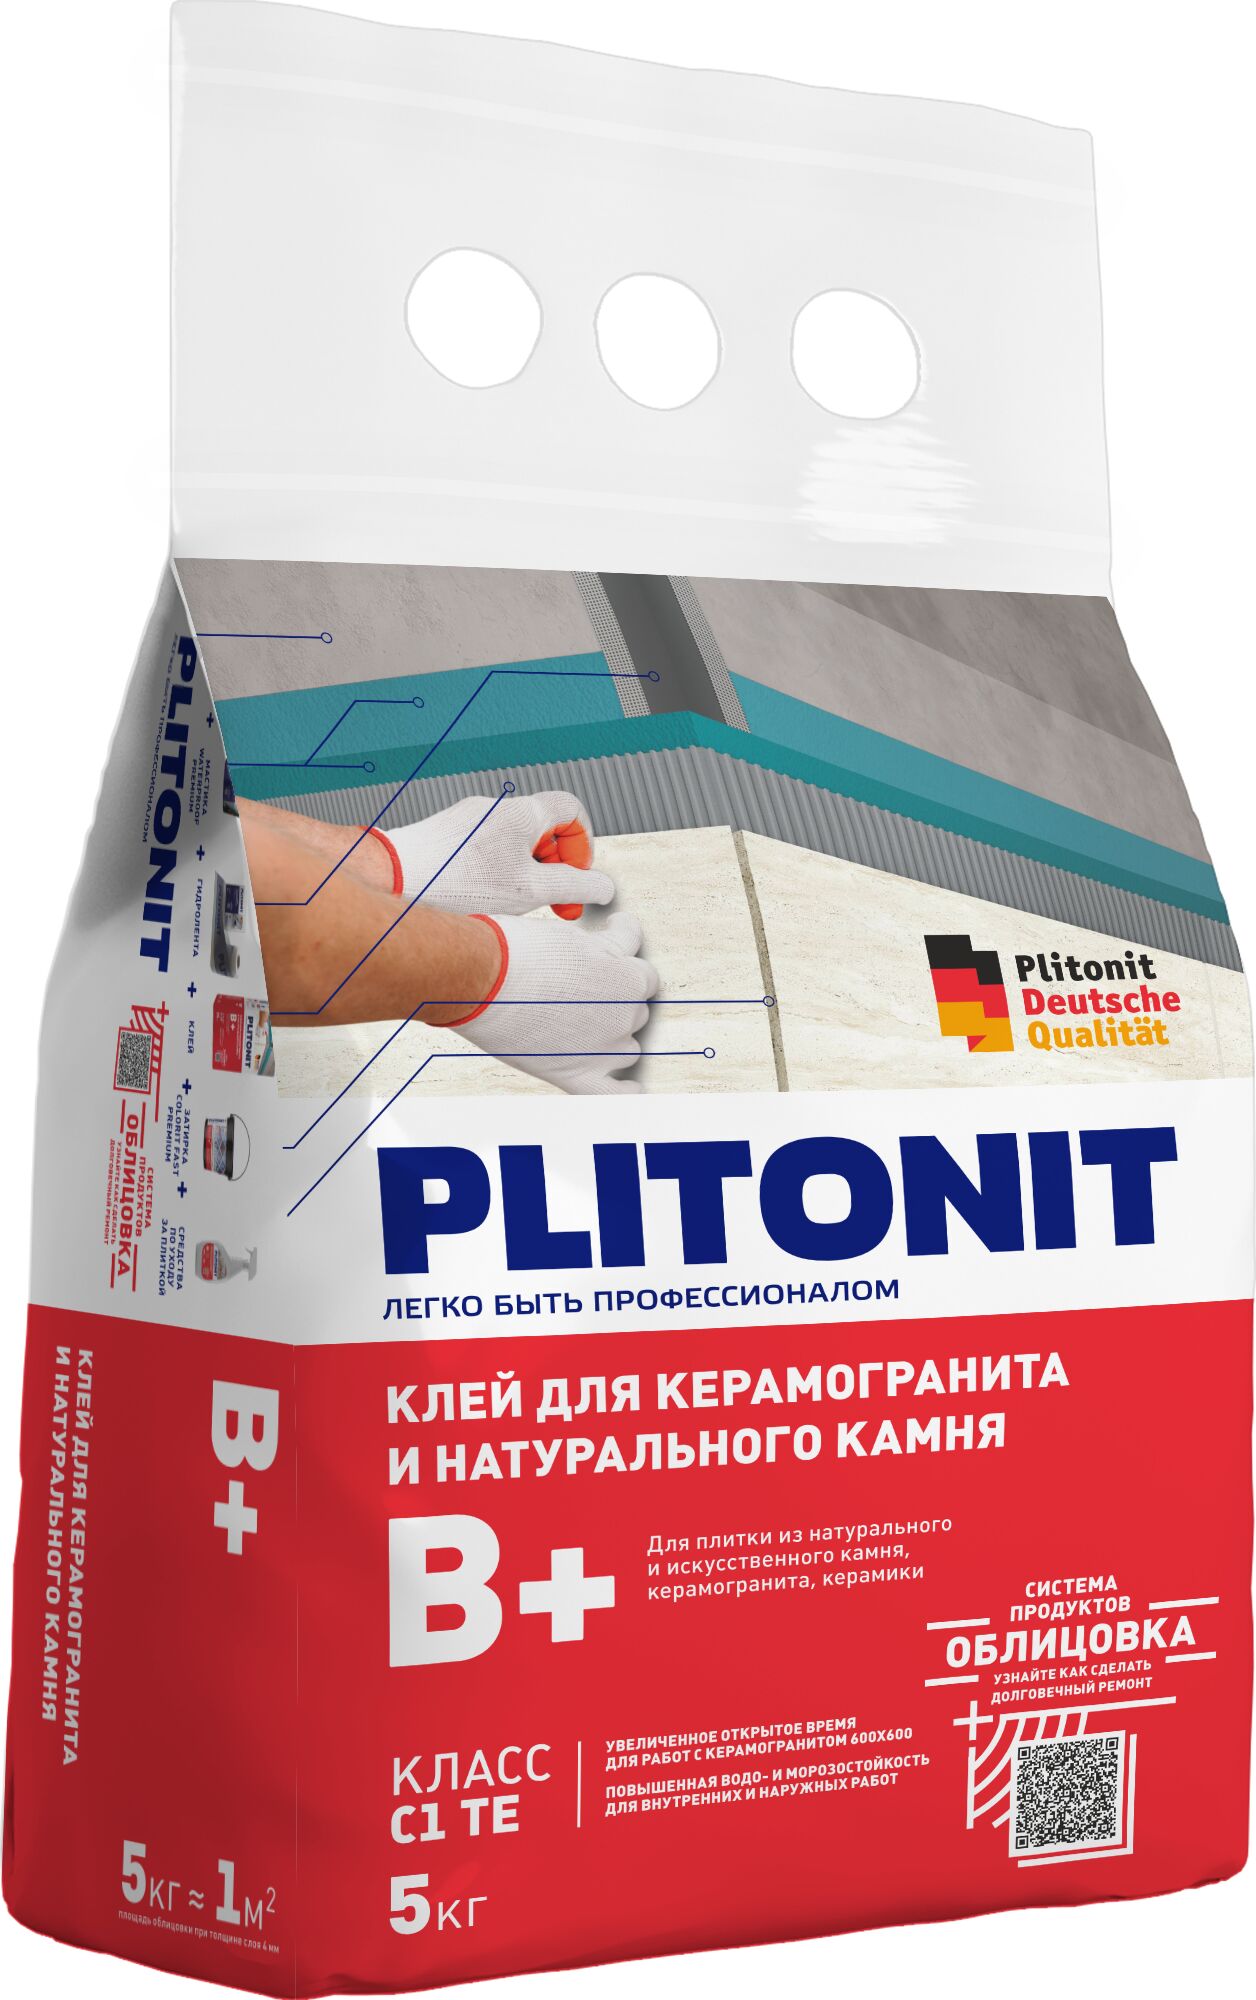 PLITONIT В+ -5 клей для крупноформатного керамогранита и натурального камня, класс С1ТЕ